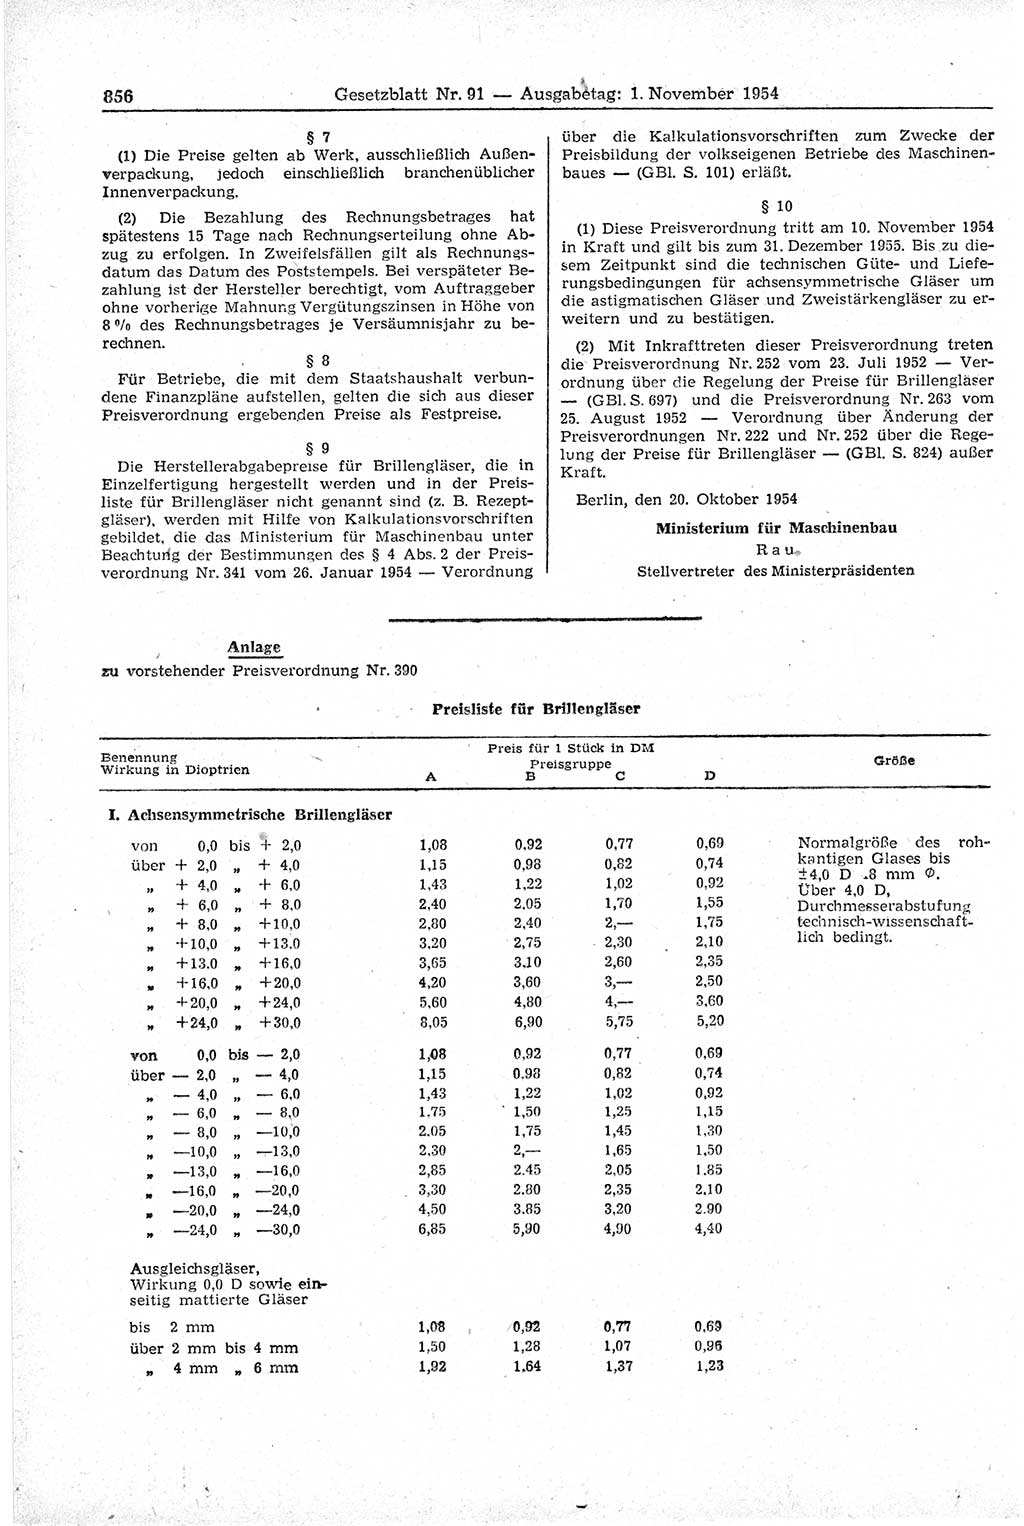 Gesetzblatt (GBl.) der Deutschen Demokratischen Republik (DDR) 1954, Seite 856 (GBl. DDR 1954, S. 856)